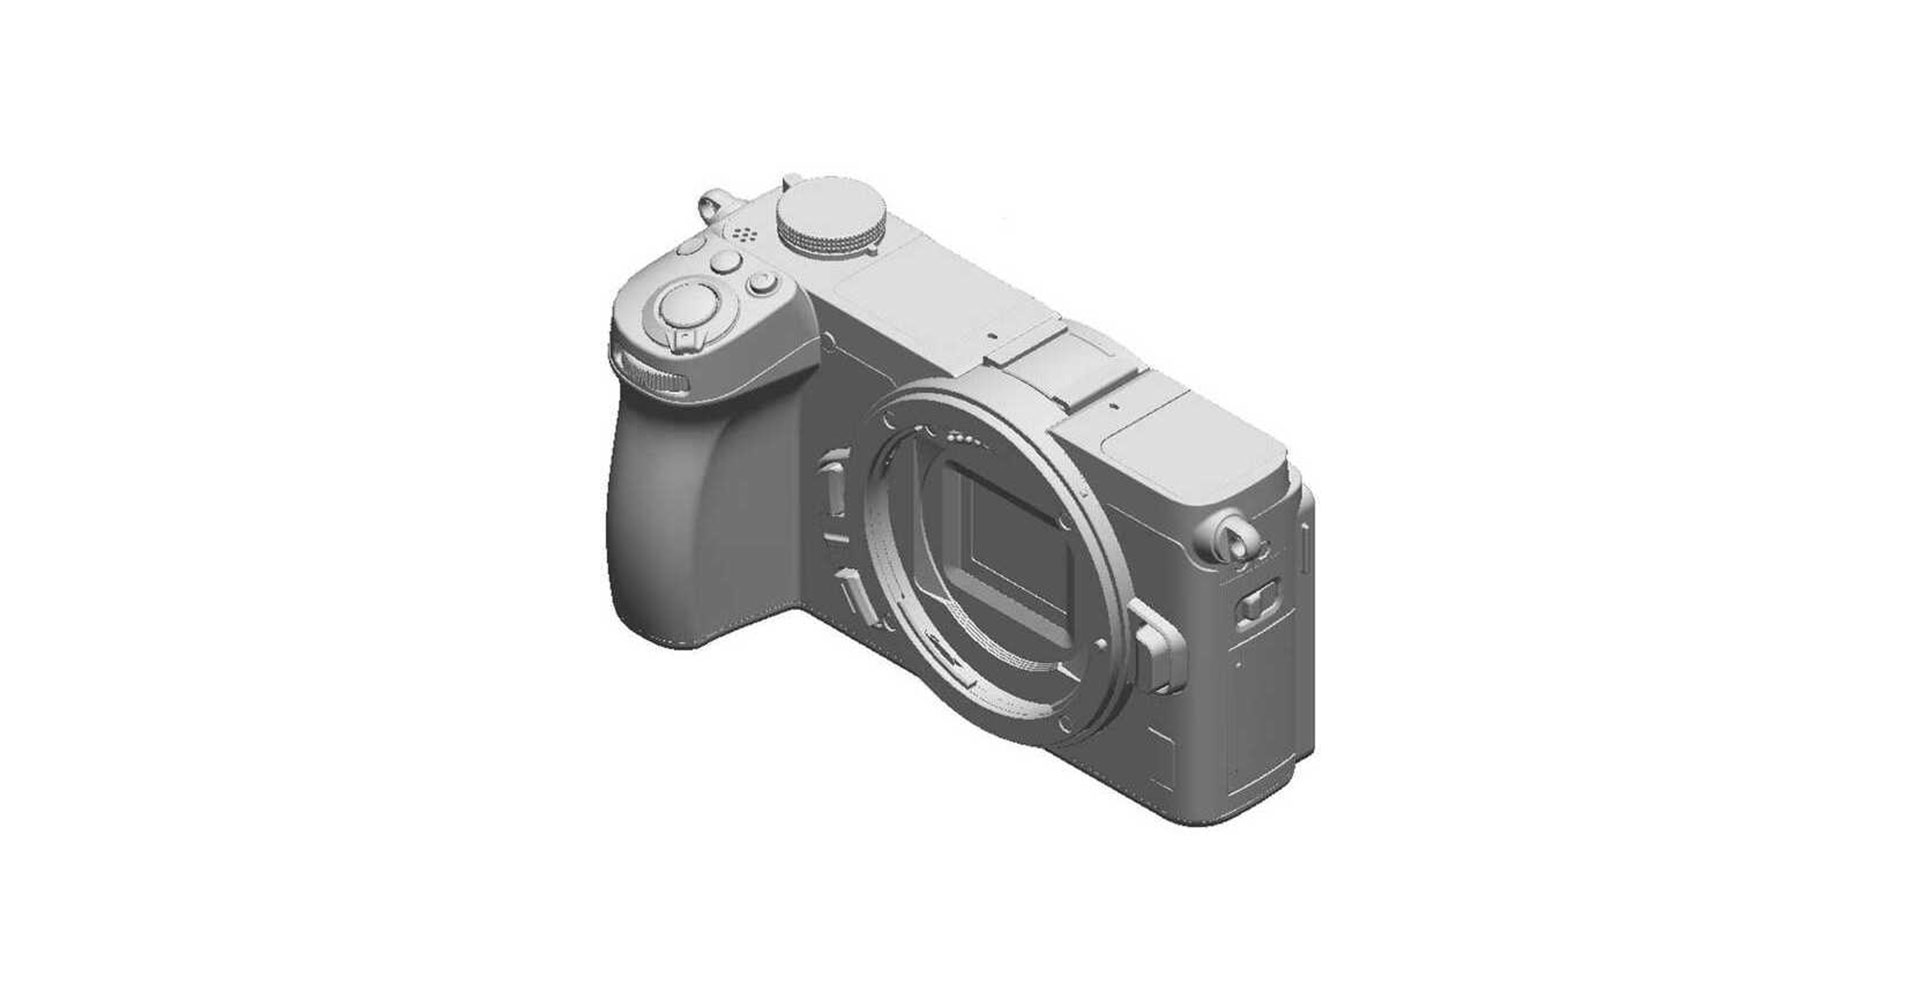 ลือ! Nikon Z30 ใช้เซนเซอร์ APS-C 20.9MP เตรียมเปิดตัวสิ้นเดือนนี้!